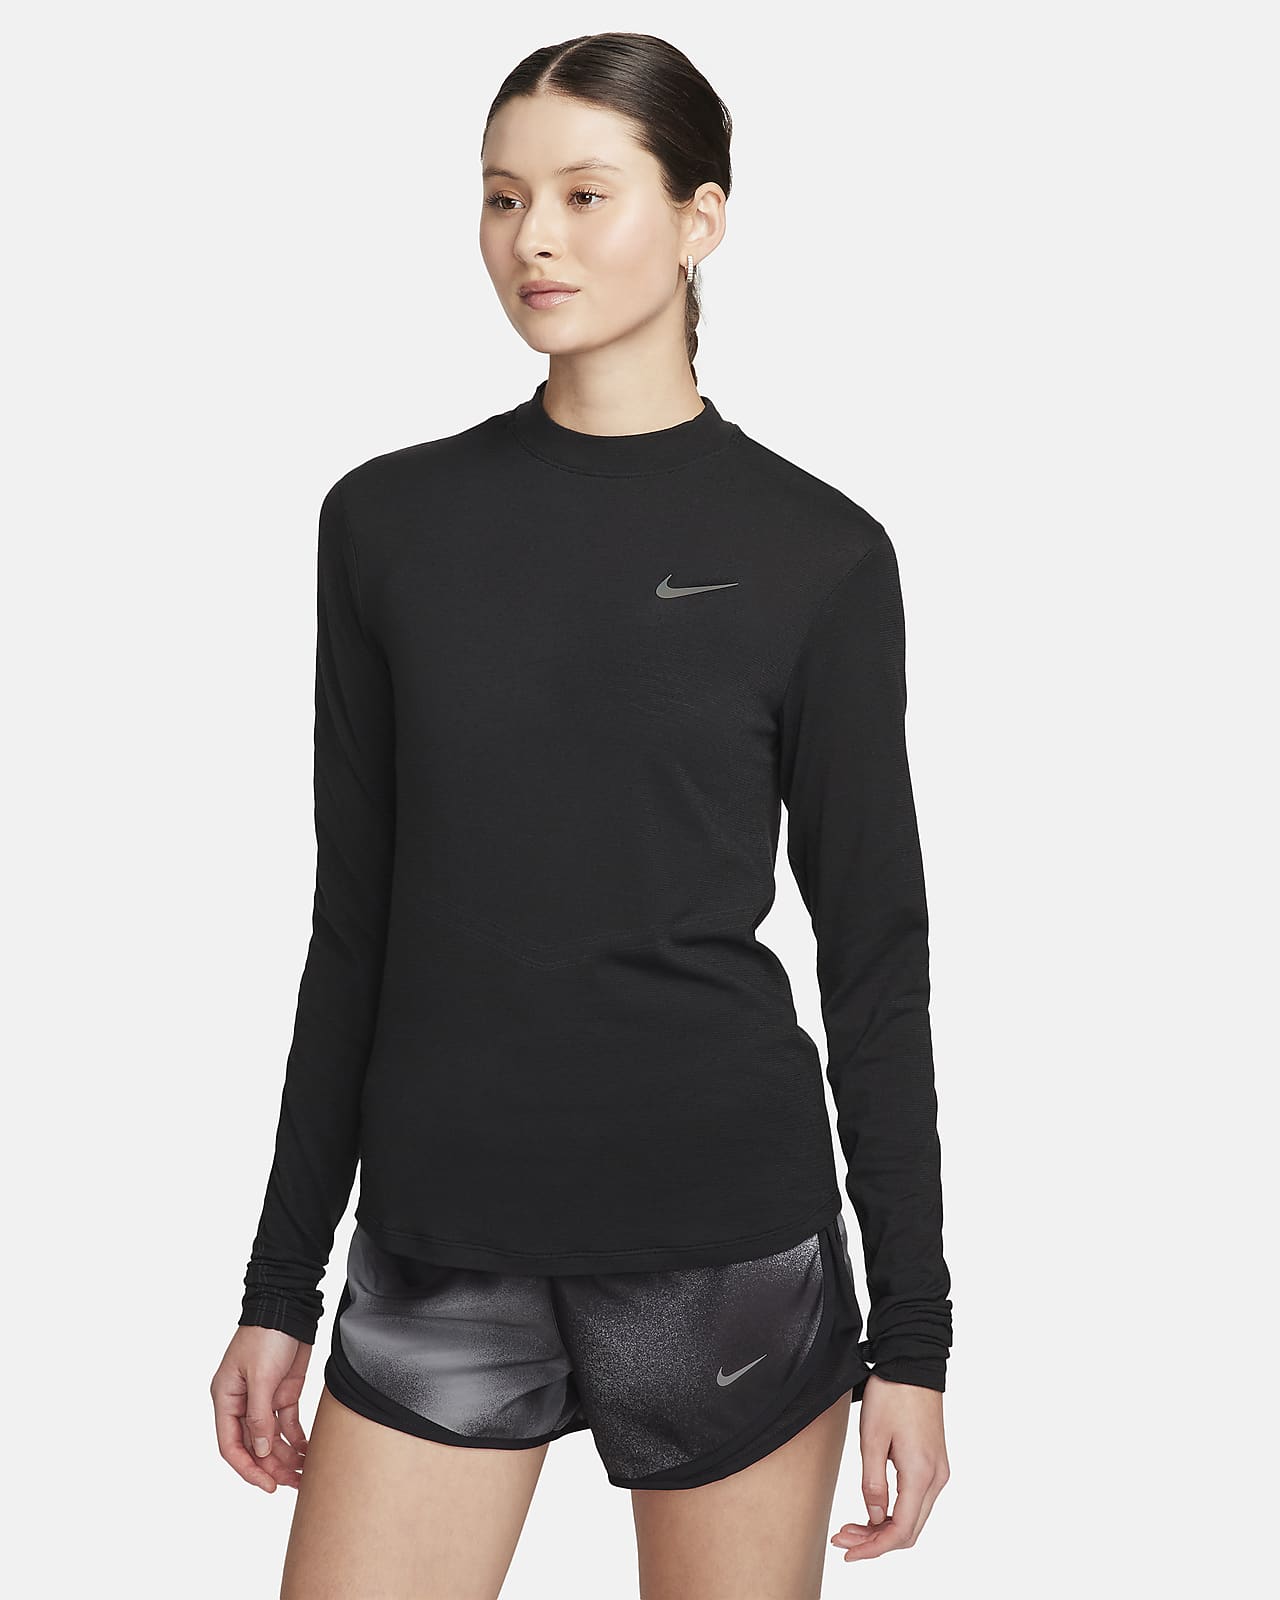 Långärmad löpartröja Nike Swift Dri-FIT med ståkrage för kvinnor